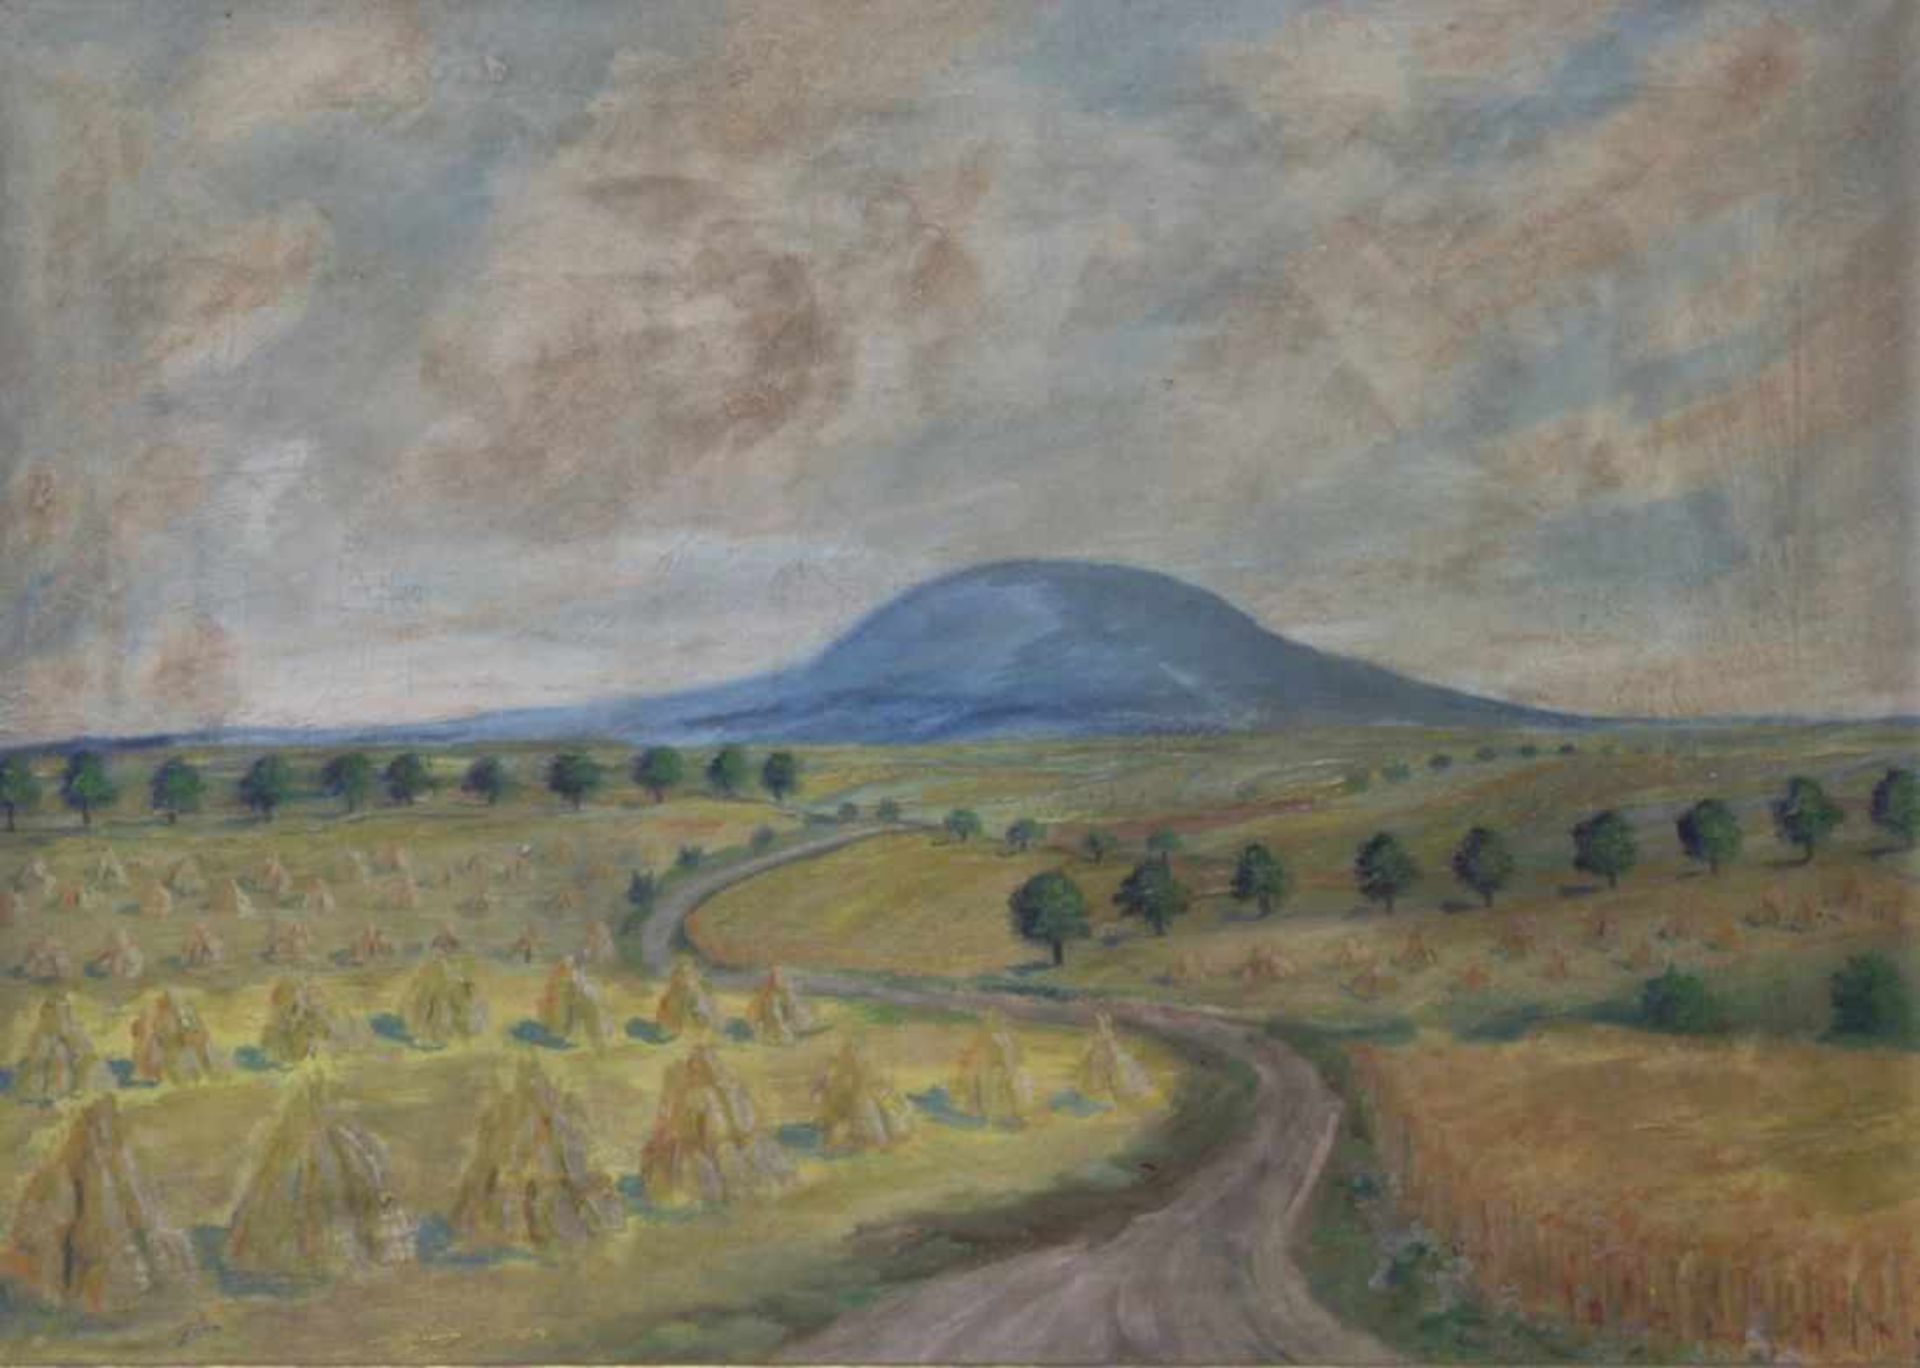 Zima, Maler Mitte 20. Jh. "Landschaft nach der Heuernte", sign., Öl/Lw., 40 x 55 cm